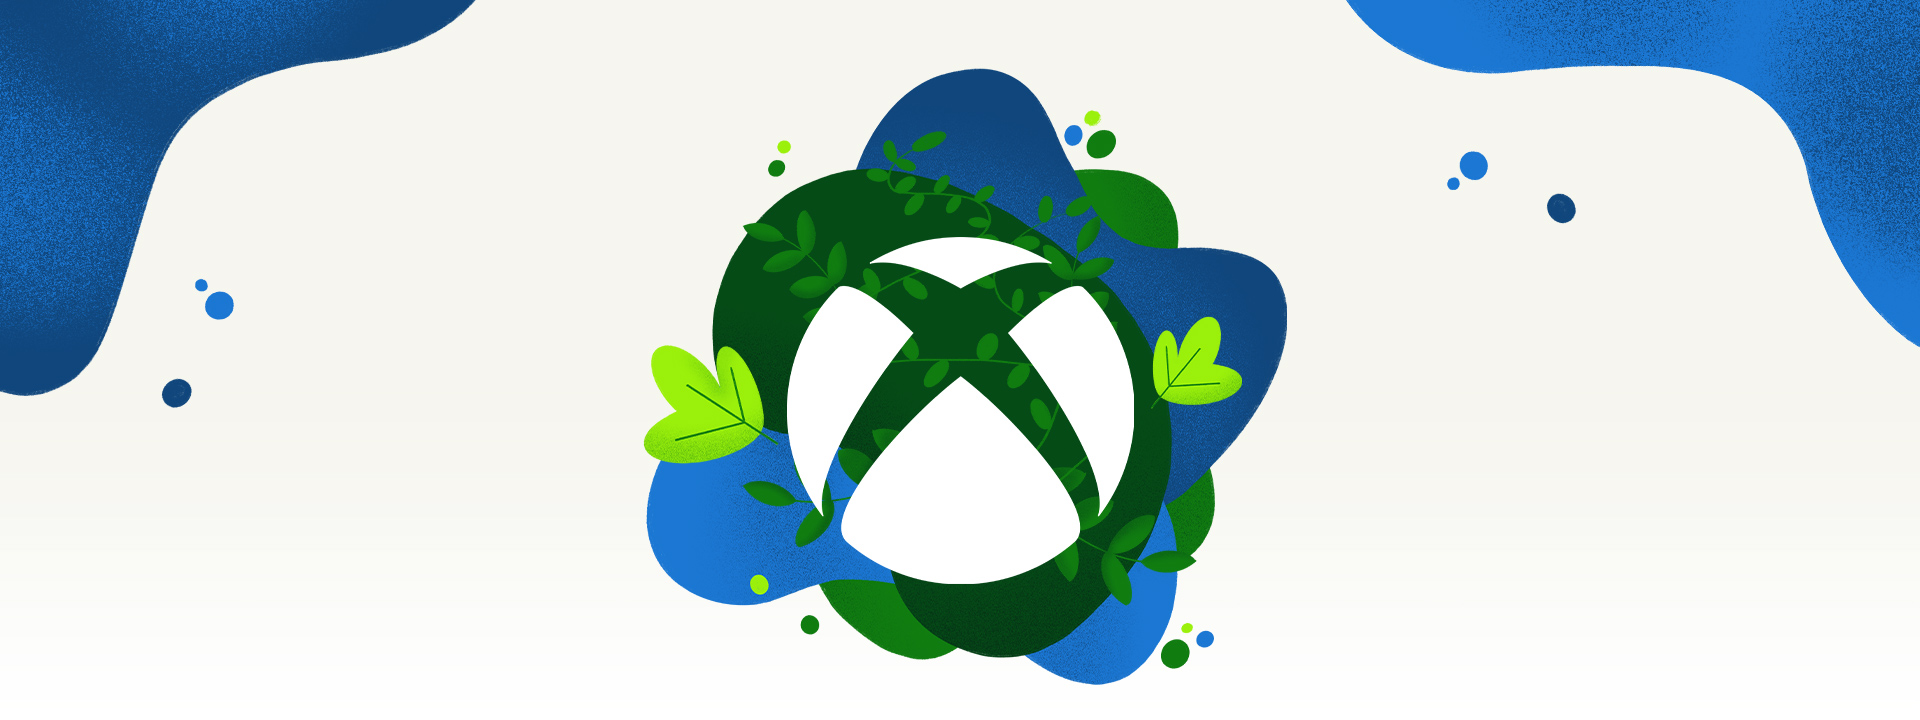 Et Xbox-logo omgivet af vegetation og plasken af blåt vand.